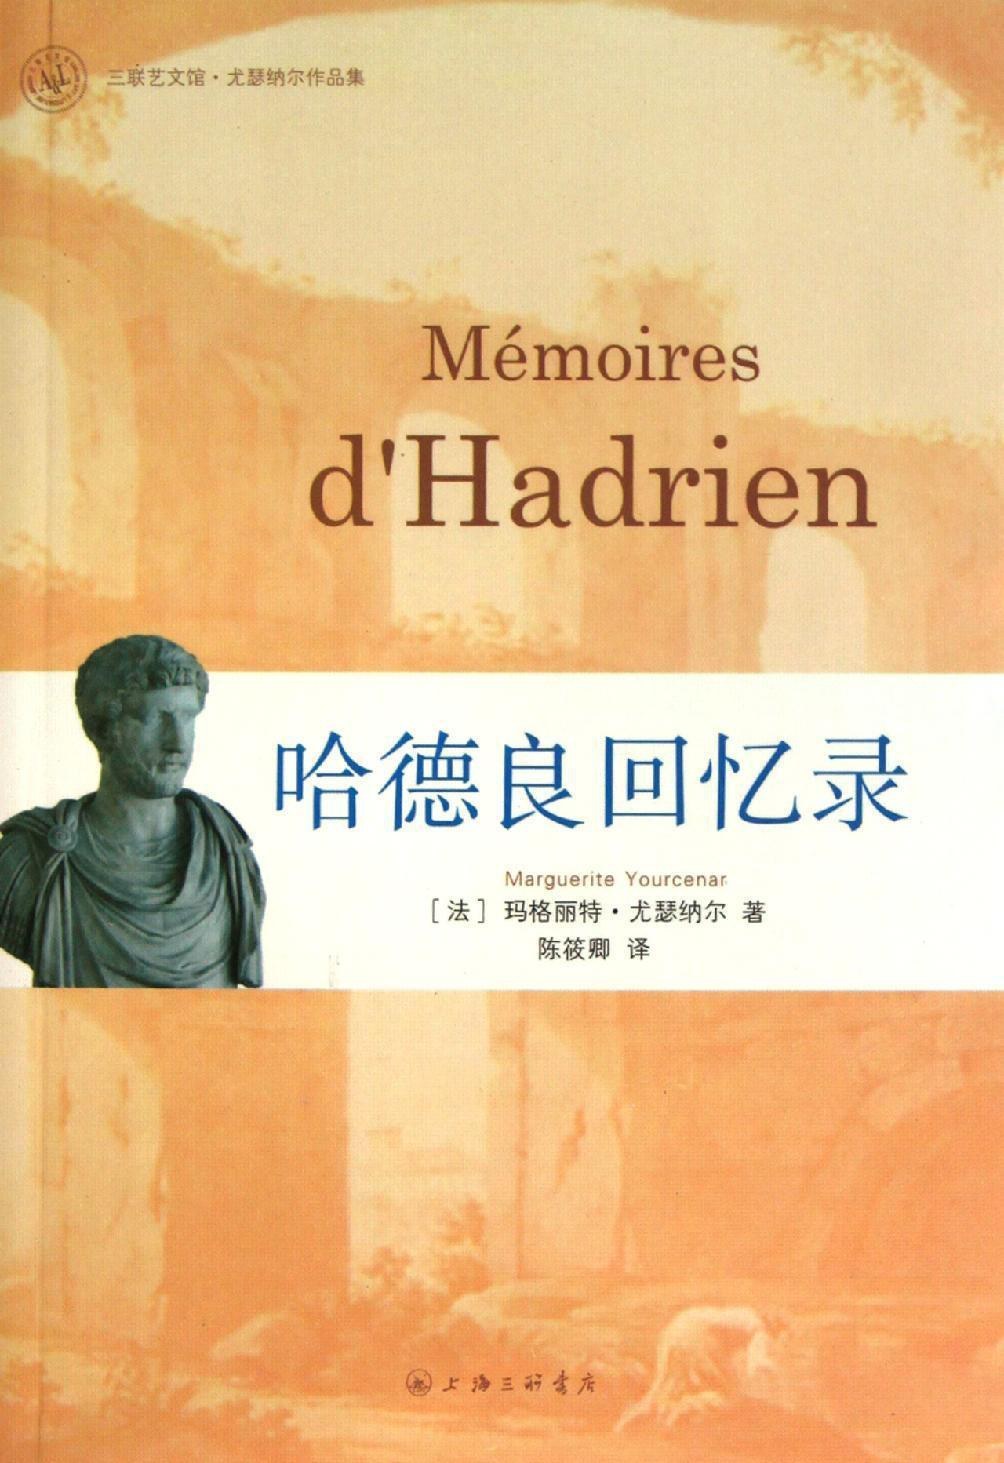 《哈德良回忆录》，作者玛格丽特·尤瑟纳尔，讲述罗马“五贤君”之一哈德良一生的故事，实际亦体现20世纪中期法国文学界对2世纪罗马的态度